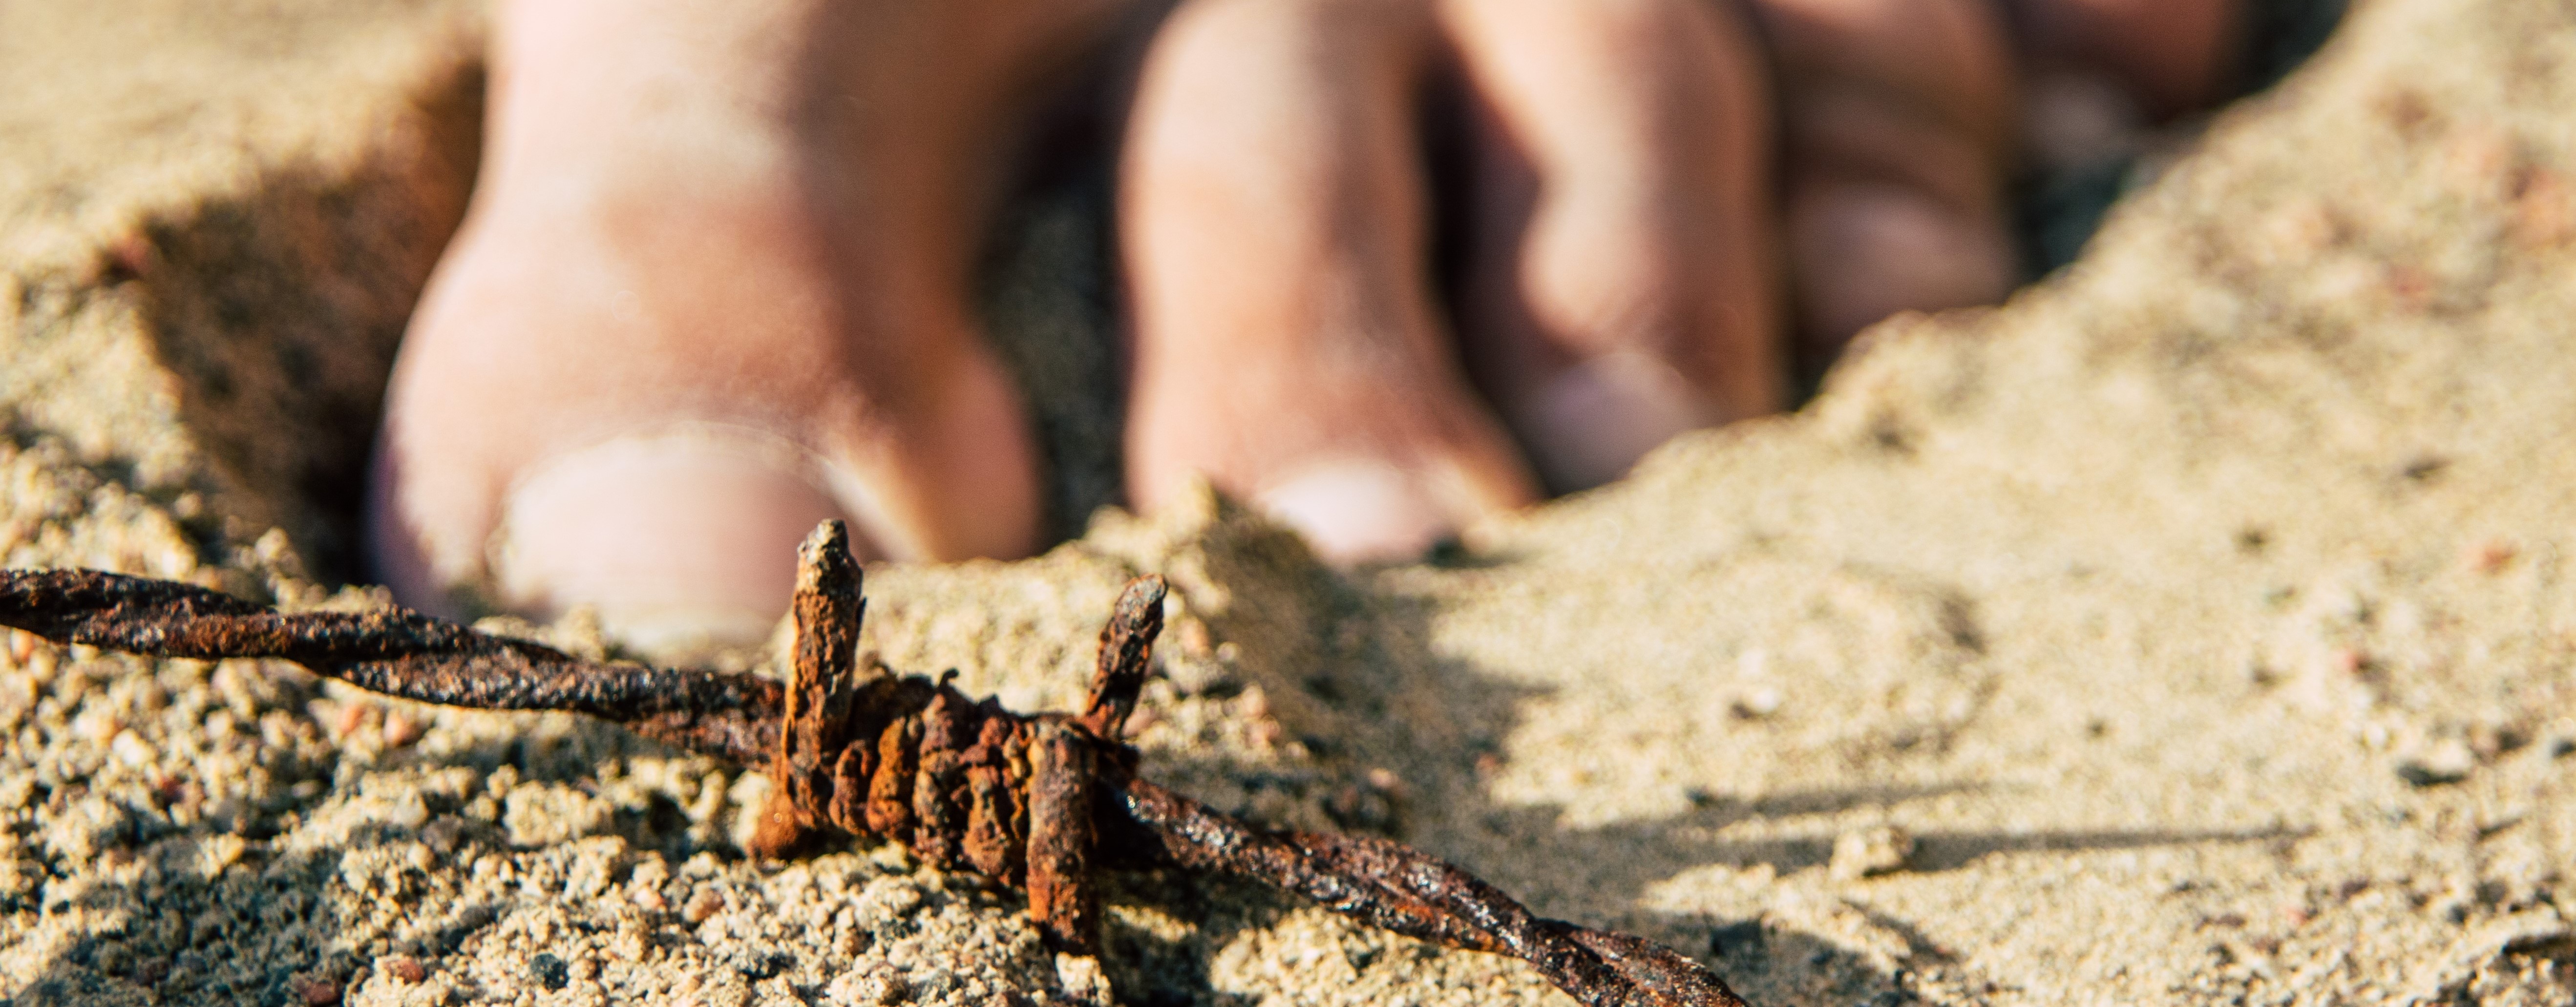 Der Riskante Schritt, Stacheldraht im Sand, barfuß